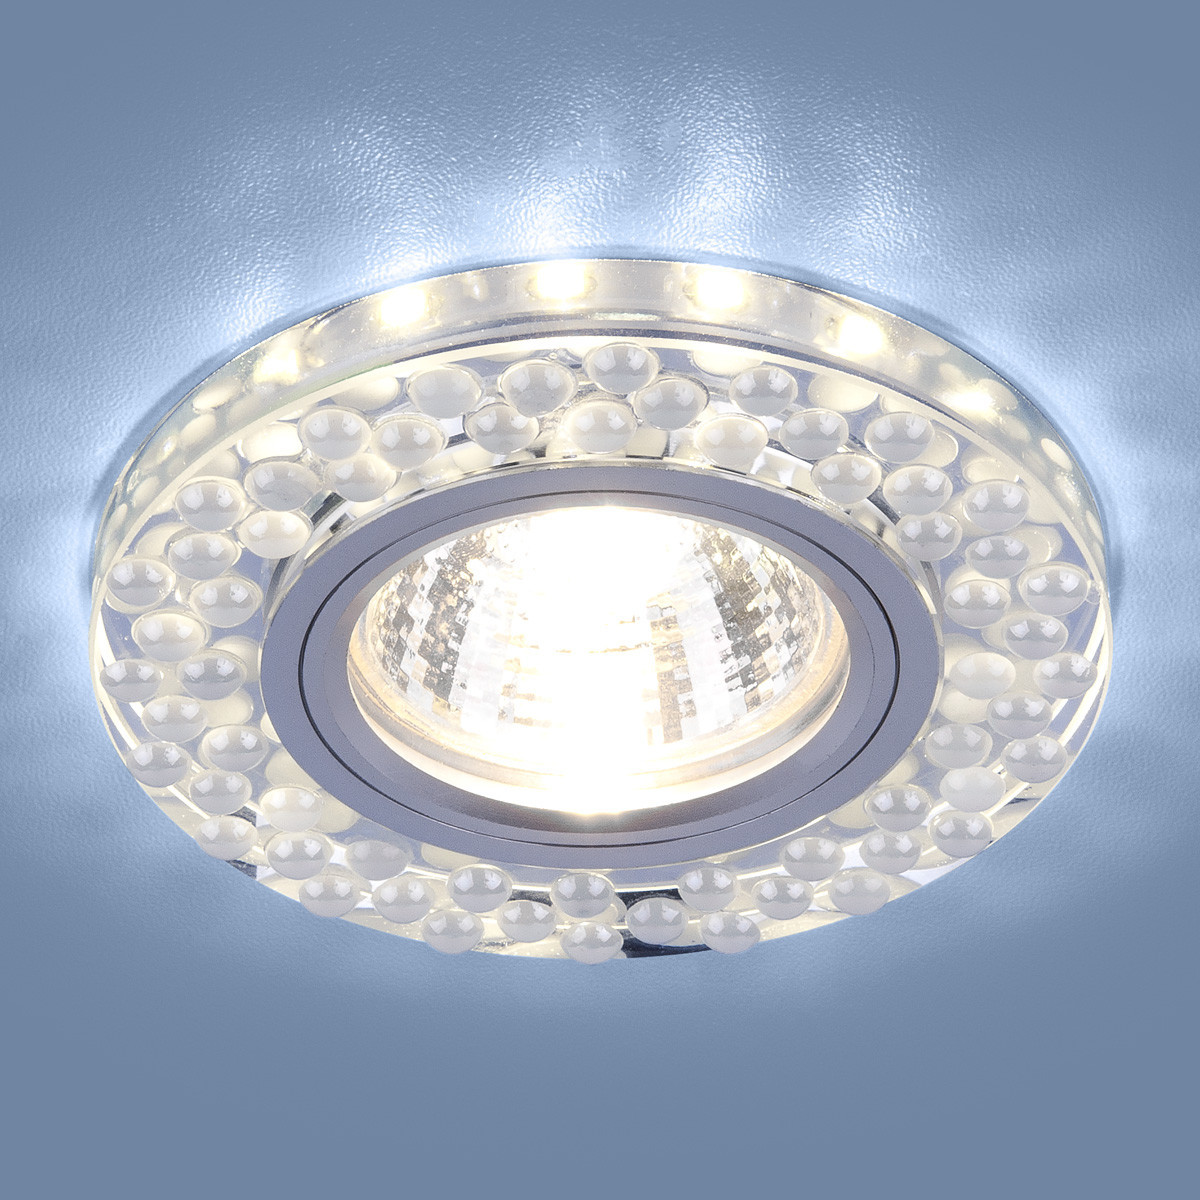 Точечный светильник со светодиодной подсветкой 2194 MR16 SL/WH зеркальный/белый